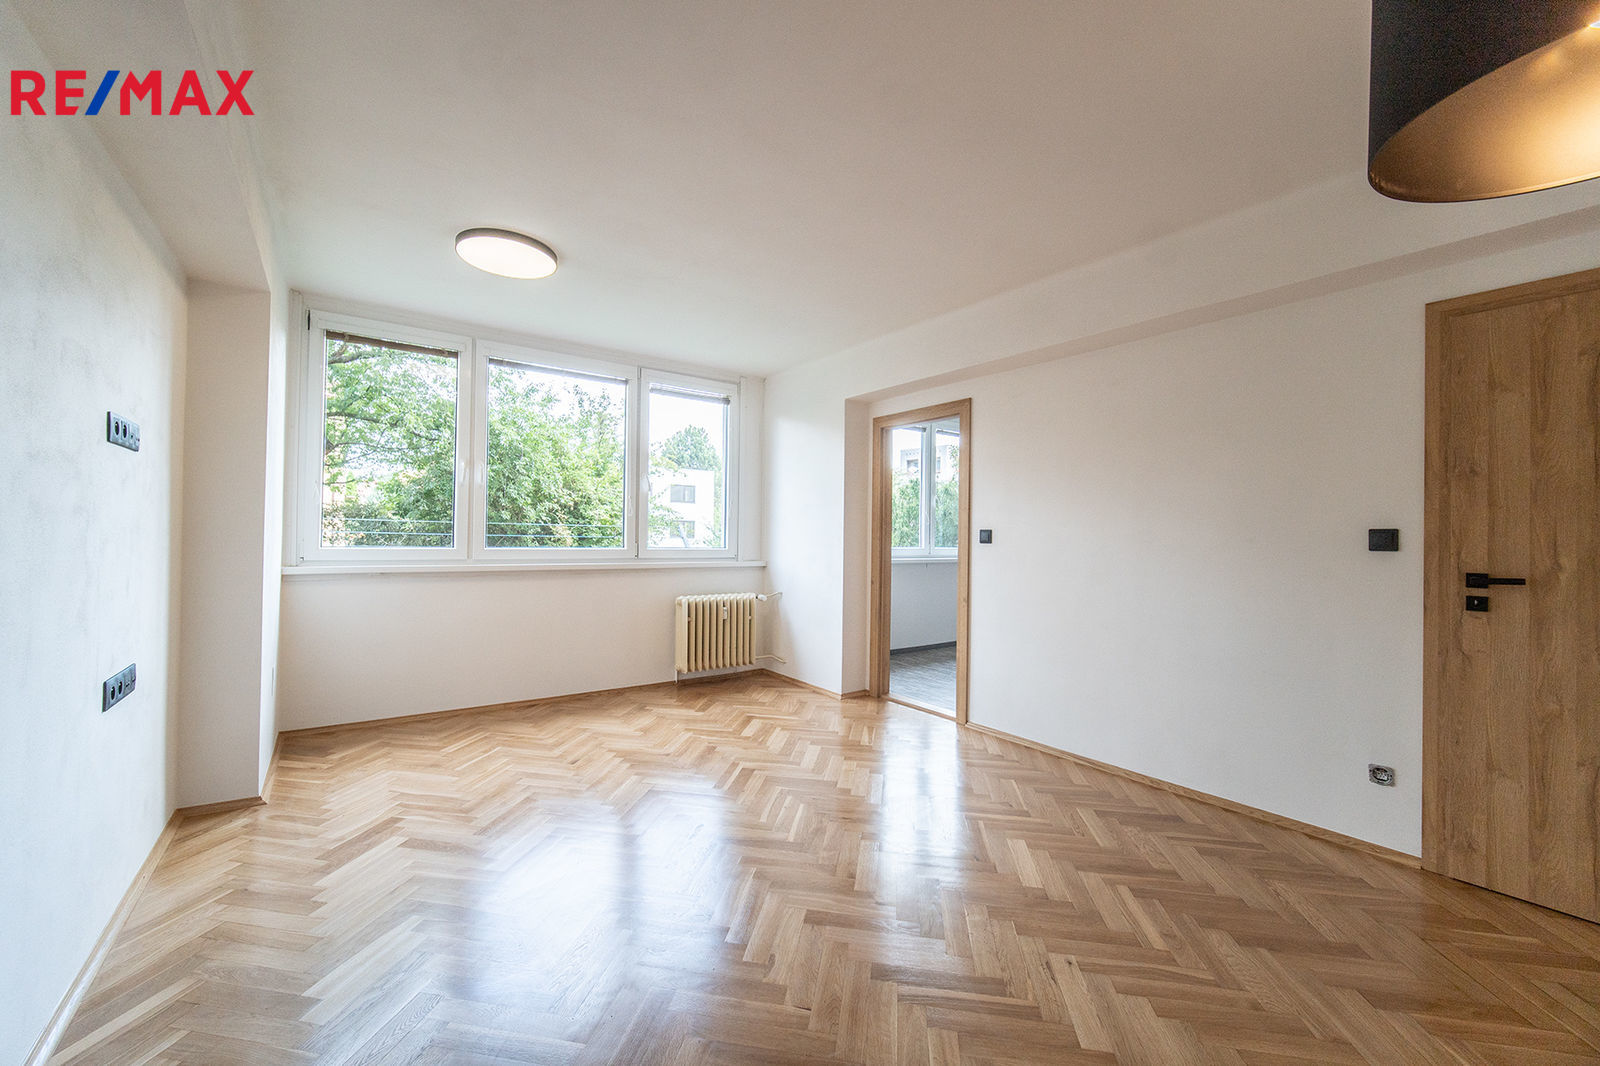 Pronájem bytu 3+1 v osobním vlastnictví, 62 m2, Kolín